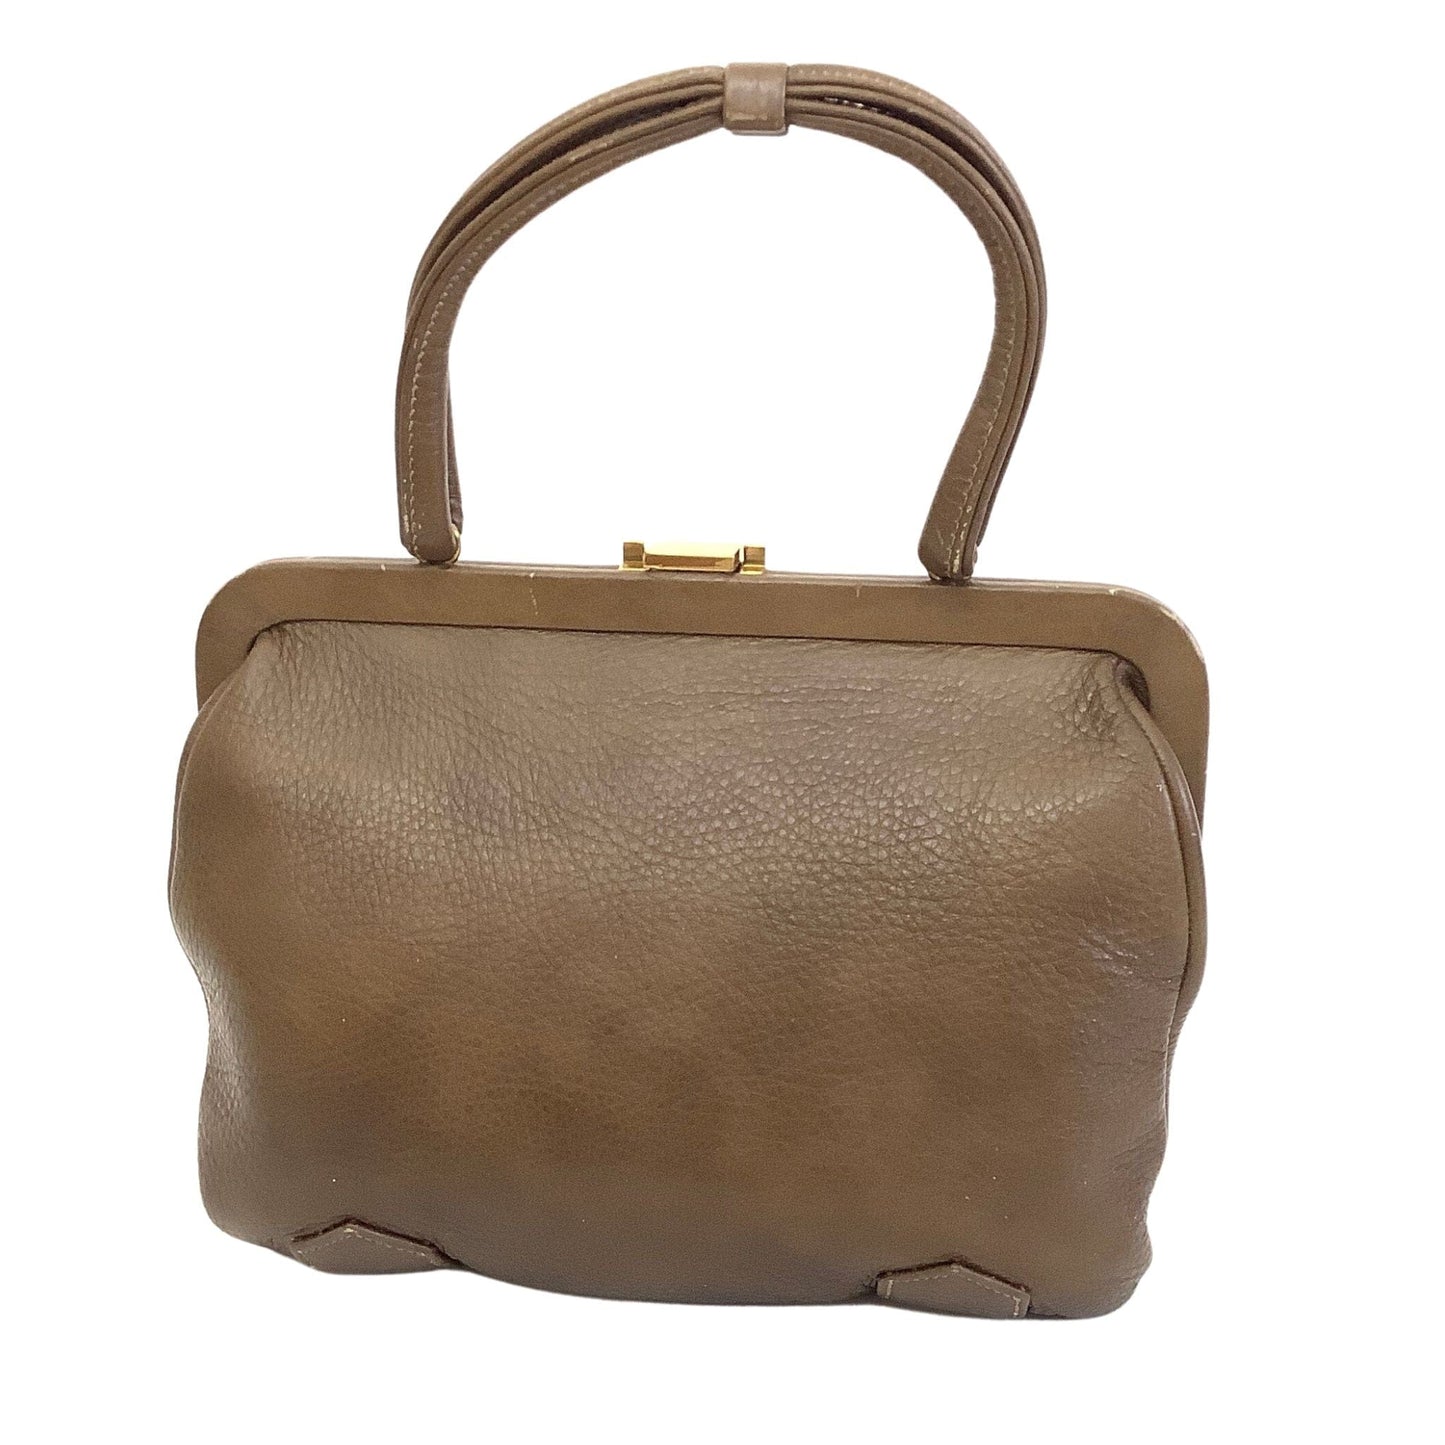 VTG School Style Satchel Bag Brown / Leather / Vintage 1980s